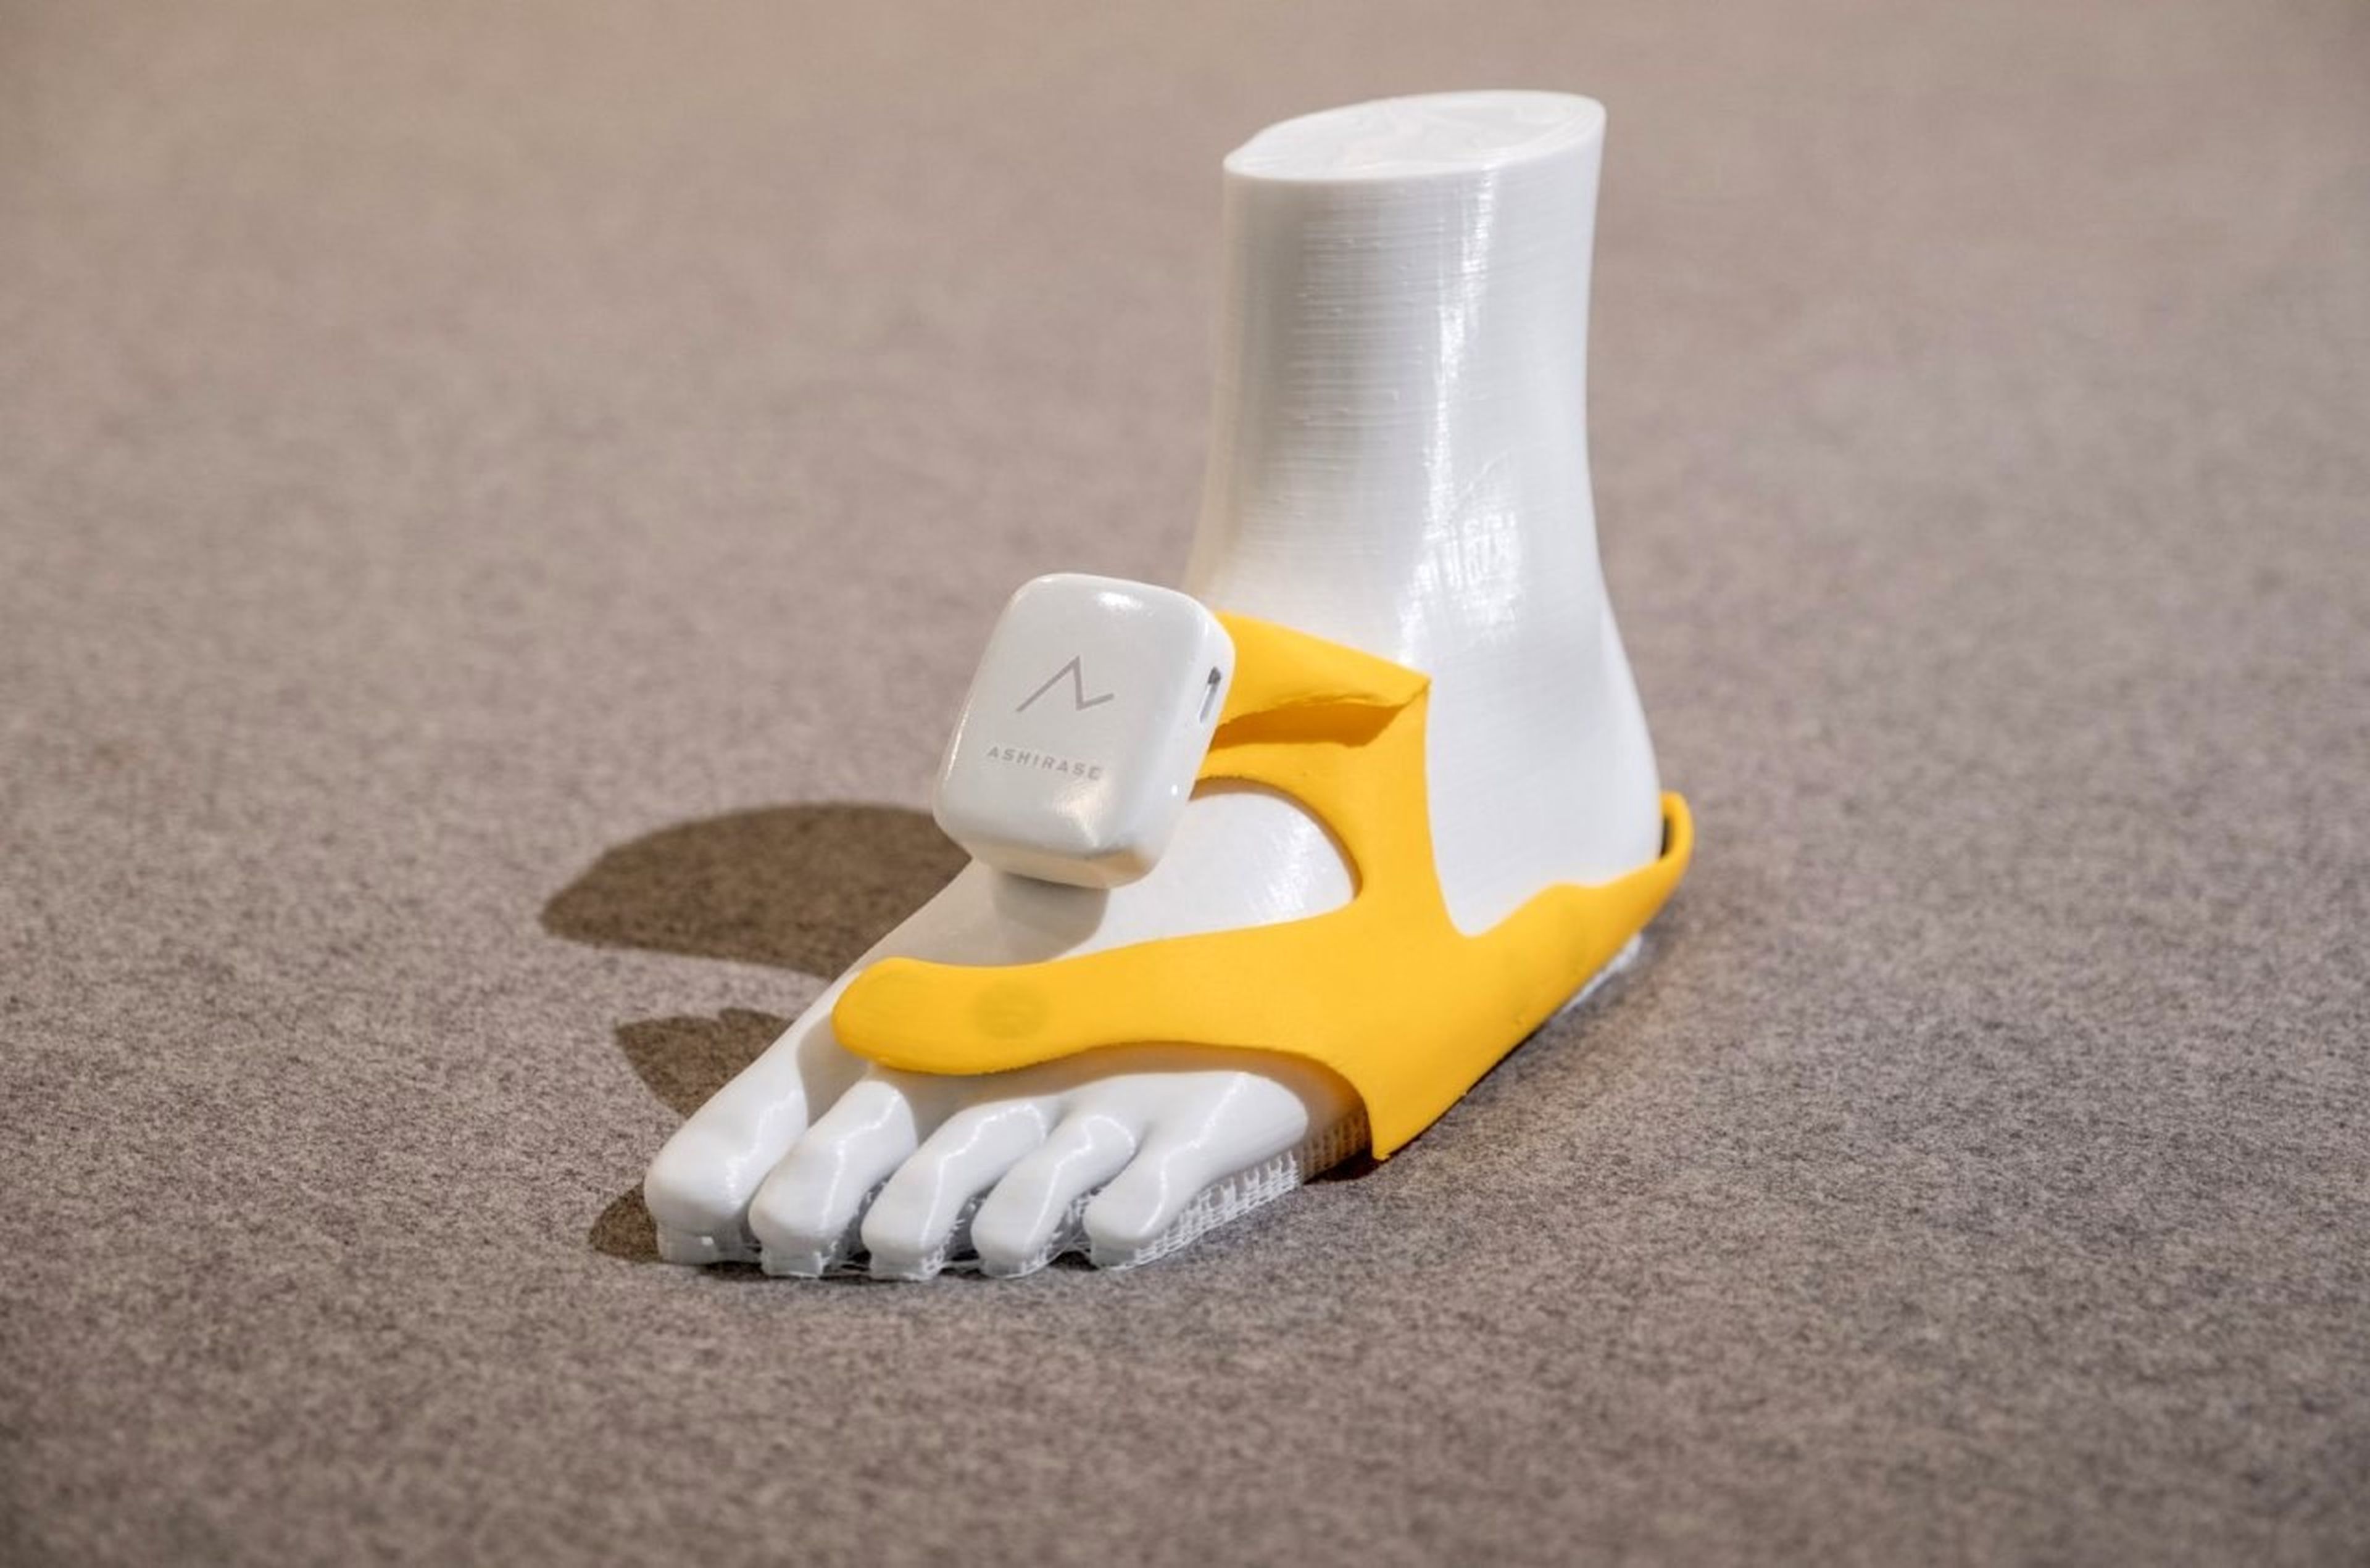 Este sensor háptico para zapatos de Honda guía a las personas ciegas a cualquier destino, usando solo sus pies